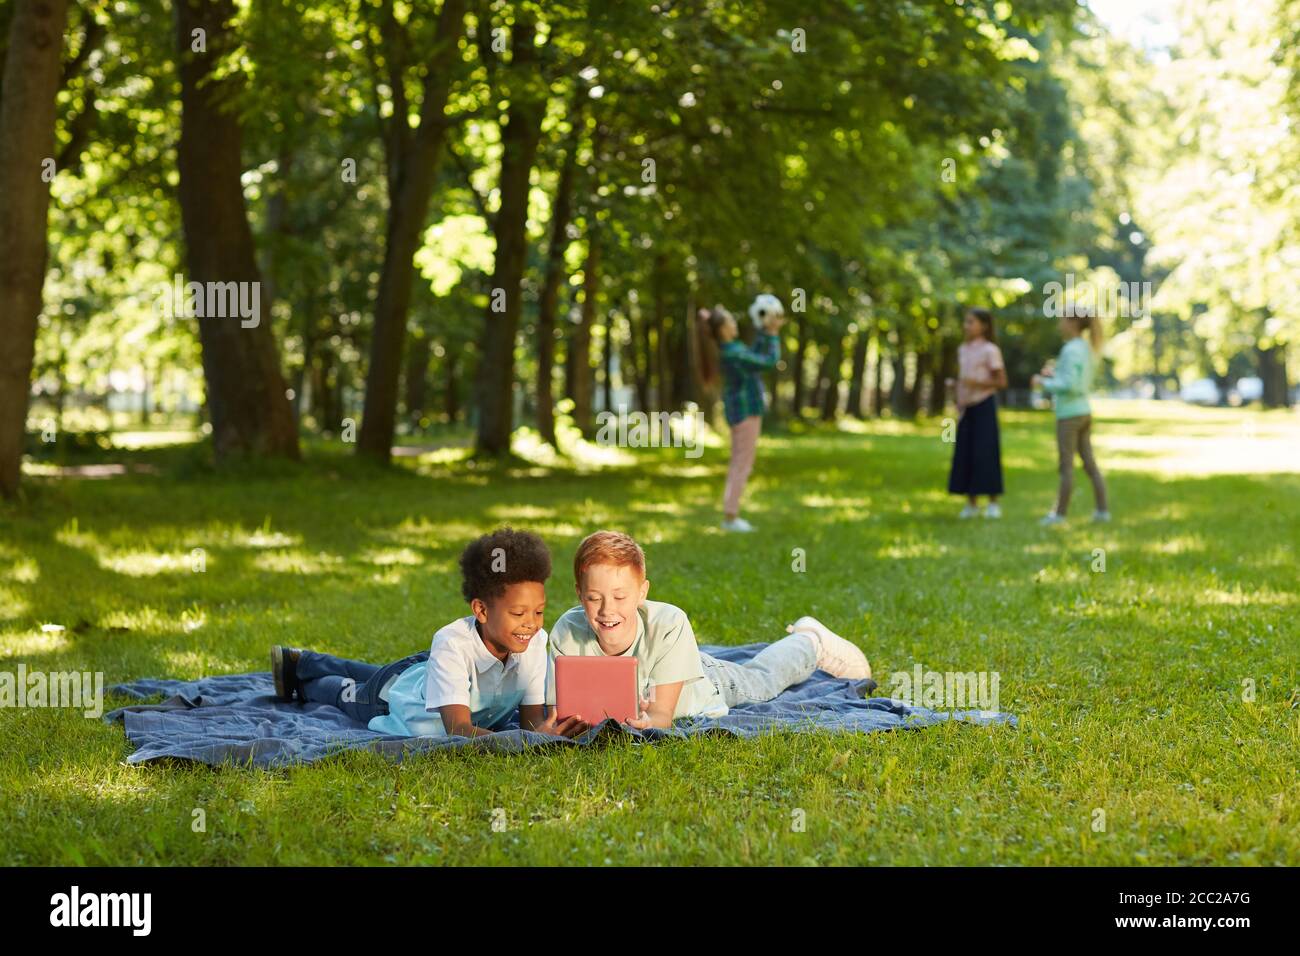 Ritratto grandangolare di due allegri ragazzi che usano il tablet digitale mentre giacciono su erba verde in un parco all'aperto illuminato dalla luce del sole, copia spazio Foto Stock